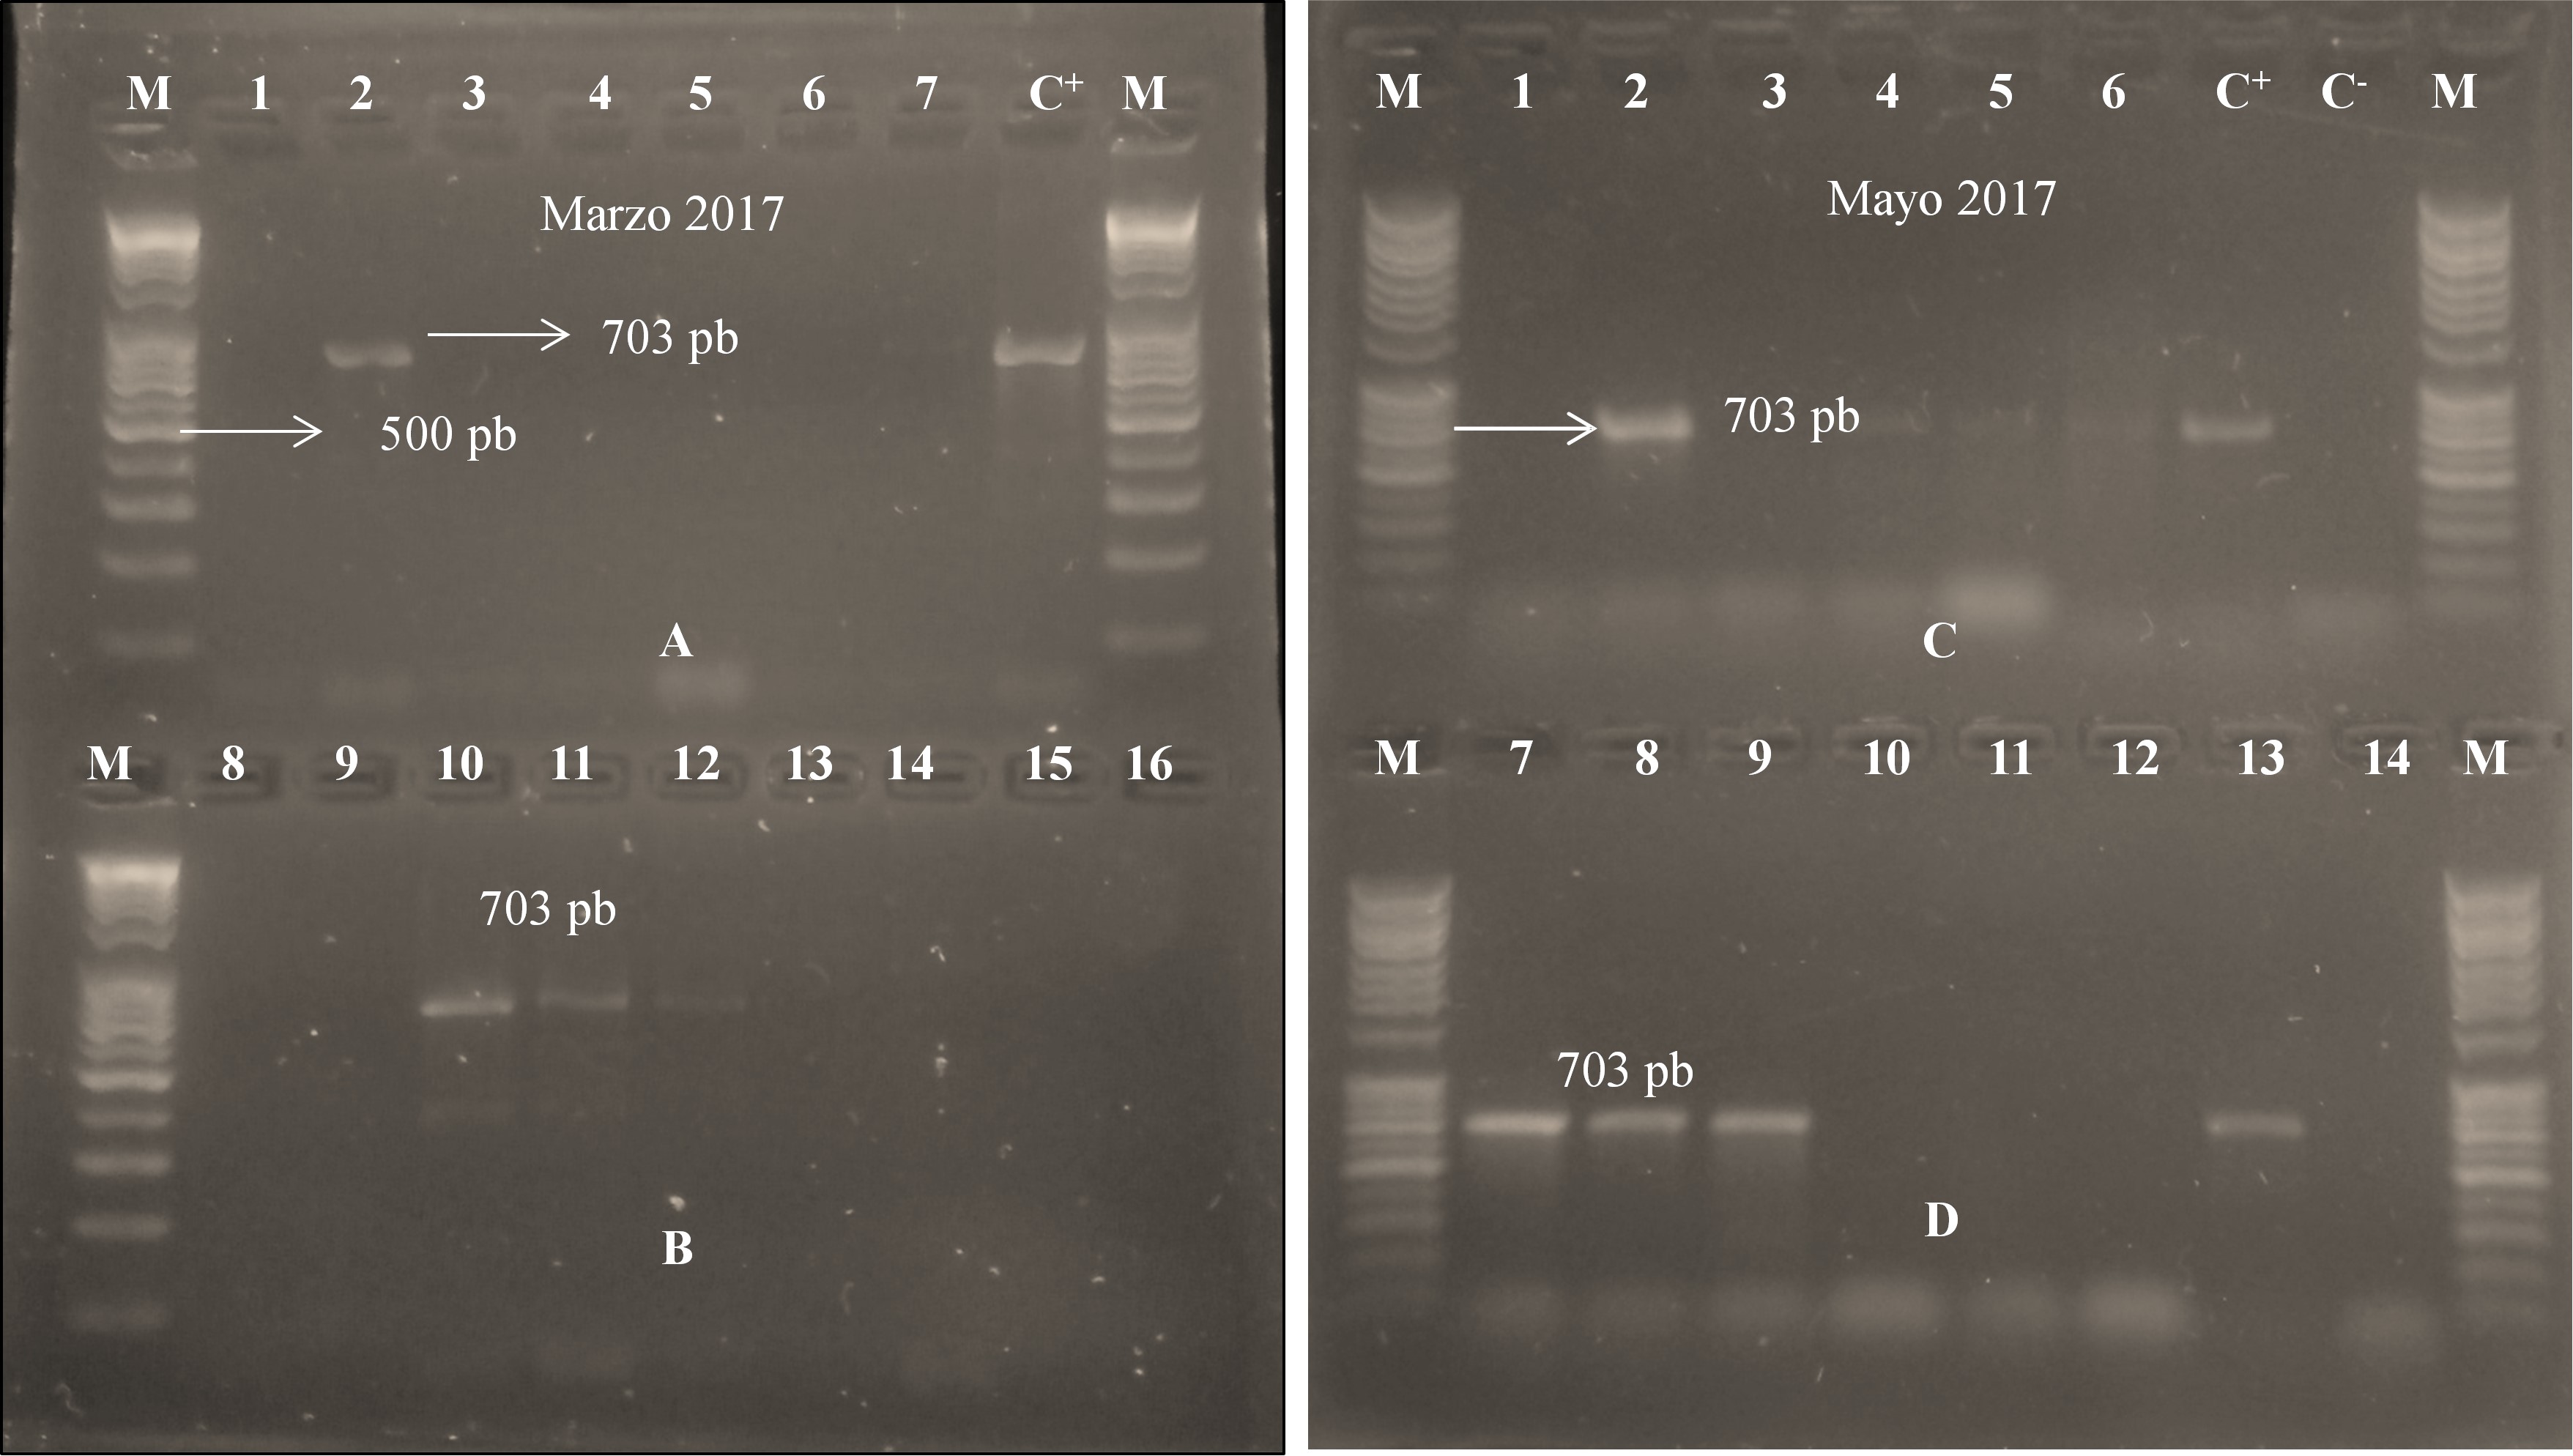 Detección positiva
de Candidatus Liberibacter asiaticus en marzo (Panel A y B) y mayo (Panel C y D)
2017. En el panel A, la única muestra positiva (carril 2) correspondió al
vivero Campos azules 1 y en panel B, las muestras positivas corresponden al
vivero El Román (carriles 10 y 11) y al vivero Campos Azules 2 (carril 12). Las
demás muestras resultaron negativas. En el panel C, los casos positivos de HLB
se registraron en el vivero El Diamante (carril 2), vivero Campos Azules 2
(carril 4), Campos Azules 1 (carriles 5 y 6). En el panel D, los casos
positivos corresponden al vivero El Román (carriles 7 y 8), El Diamante (carril
9) y Campos Azules 1 (carril 13). C+
= control positivo, C- = control negativo y M = marcador molecular
de 100 pb, A, B, C y D son los paneles.